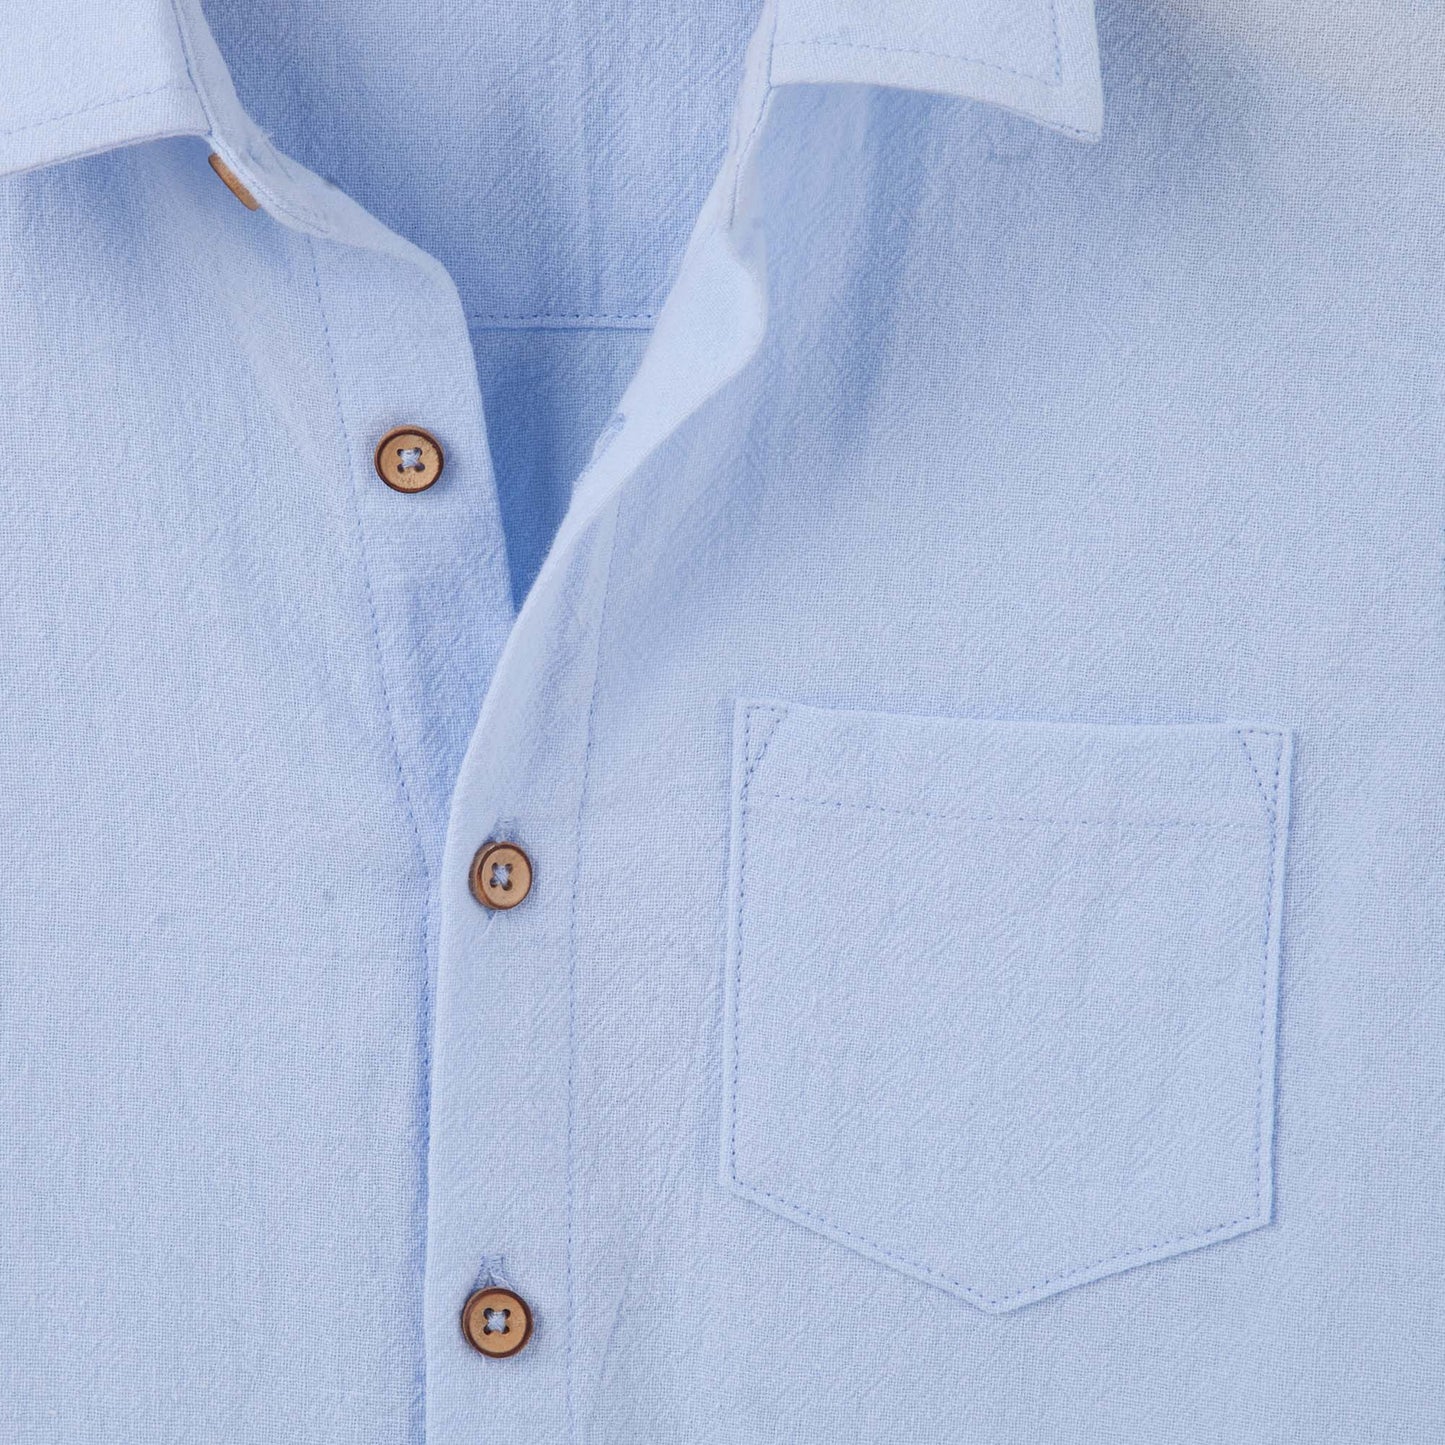 Designer Kidz | Archie Long Sleeved Button Shirt | Blue